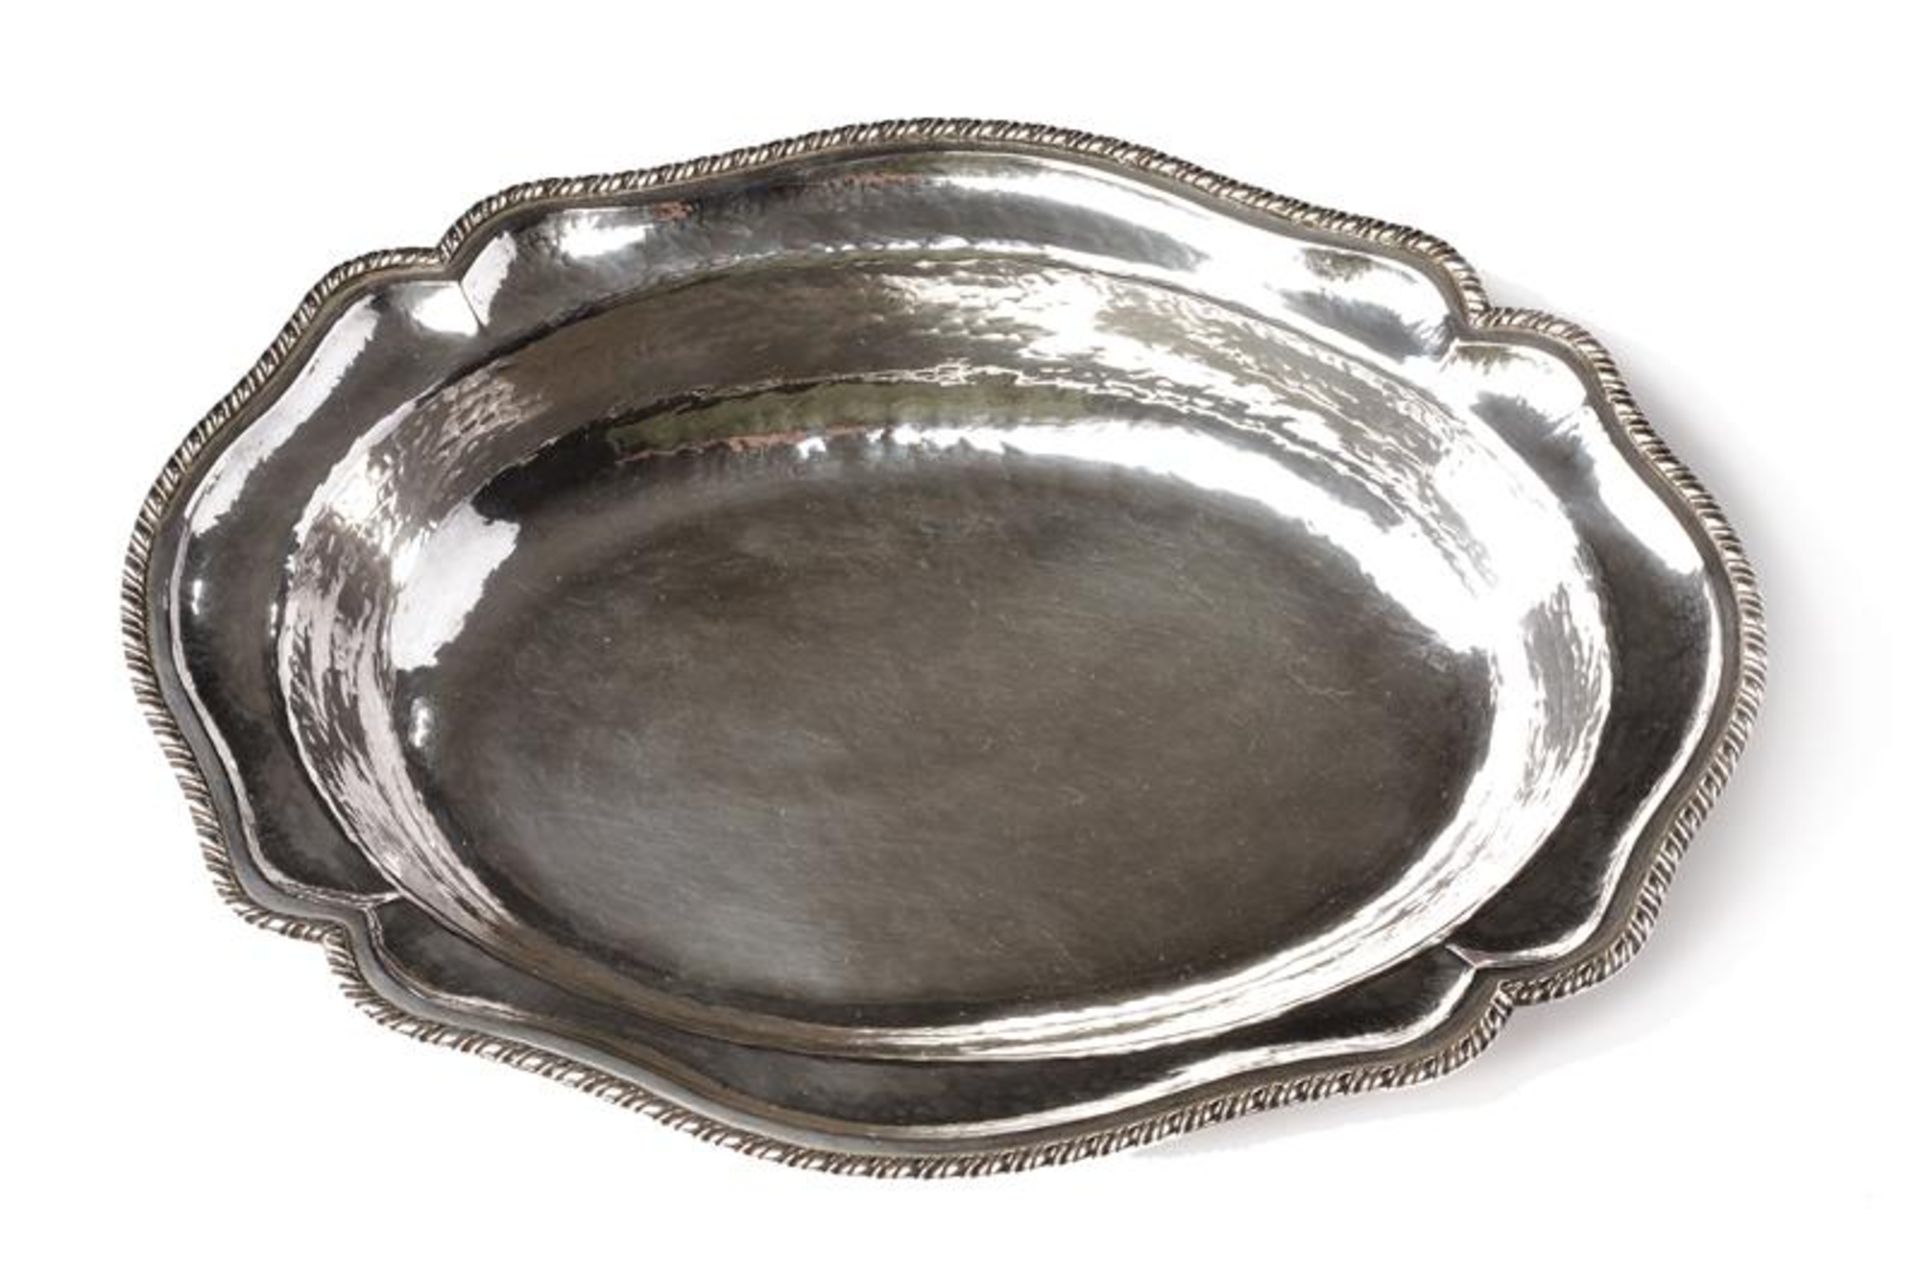 A silver centerpiece